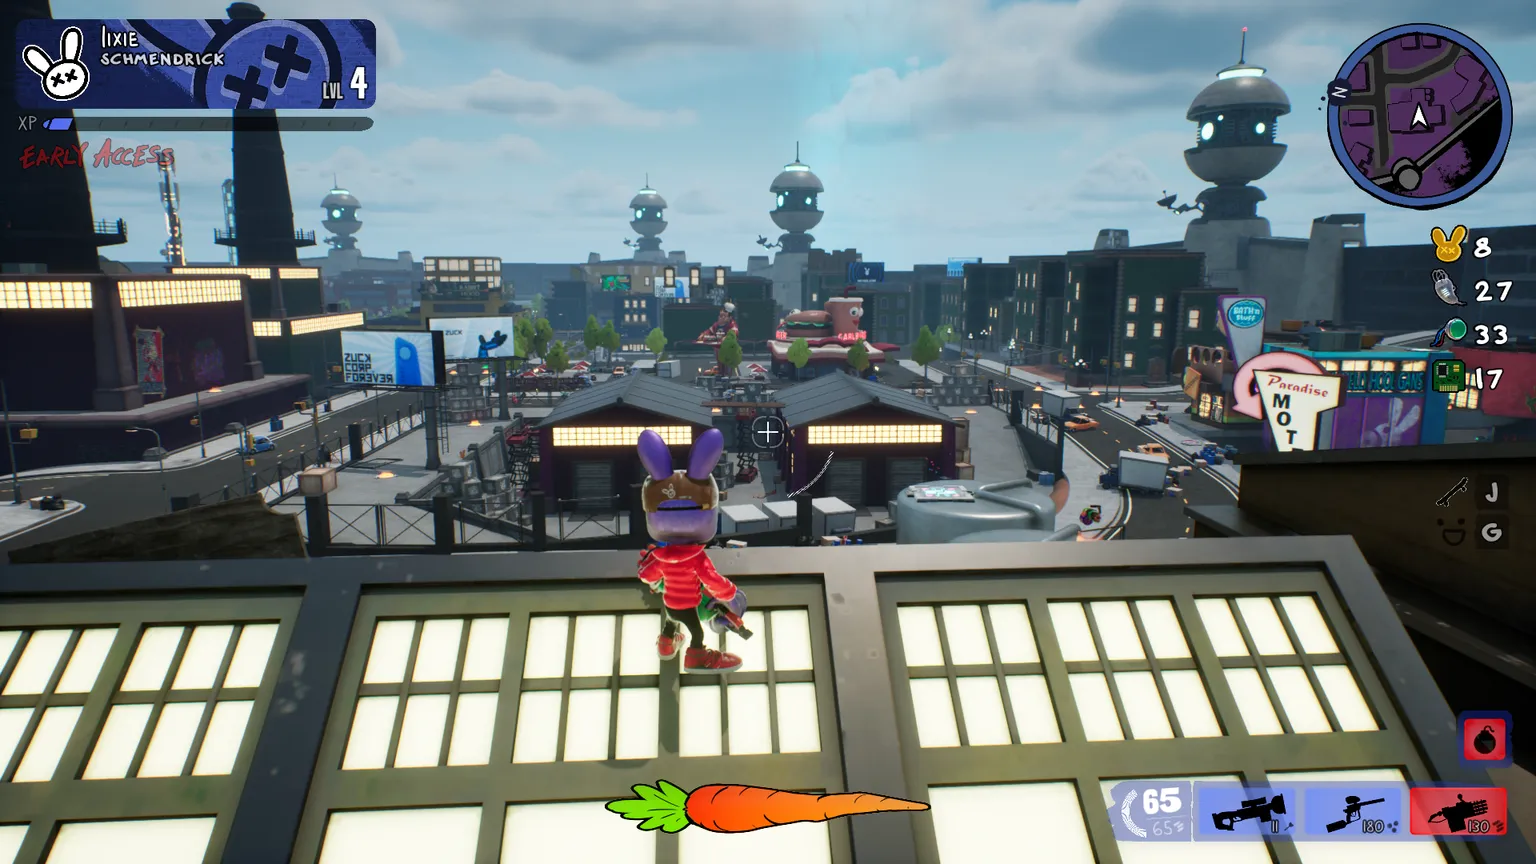 captura de pantalla del juego My Pet Hooligan, mostrando un personaje de conejo parado en un techo mirando hacia una ciudad.